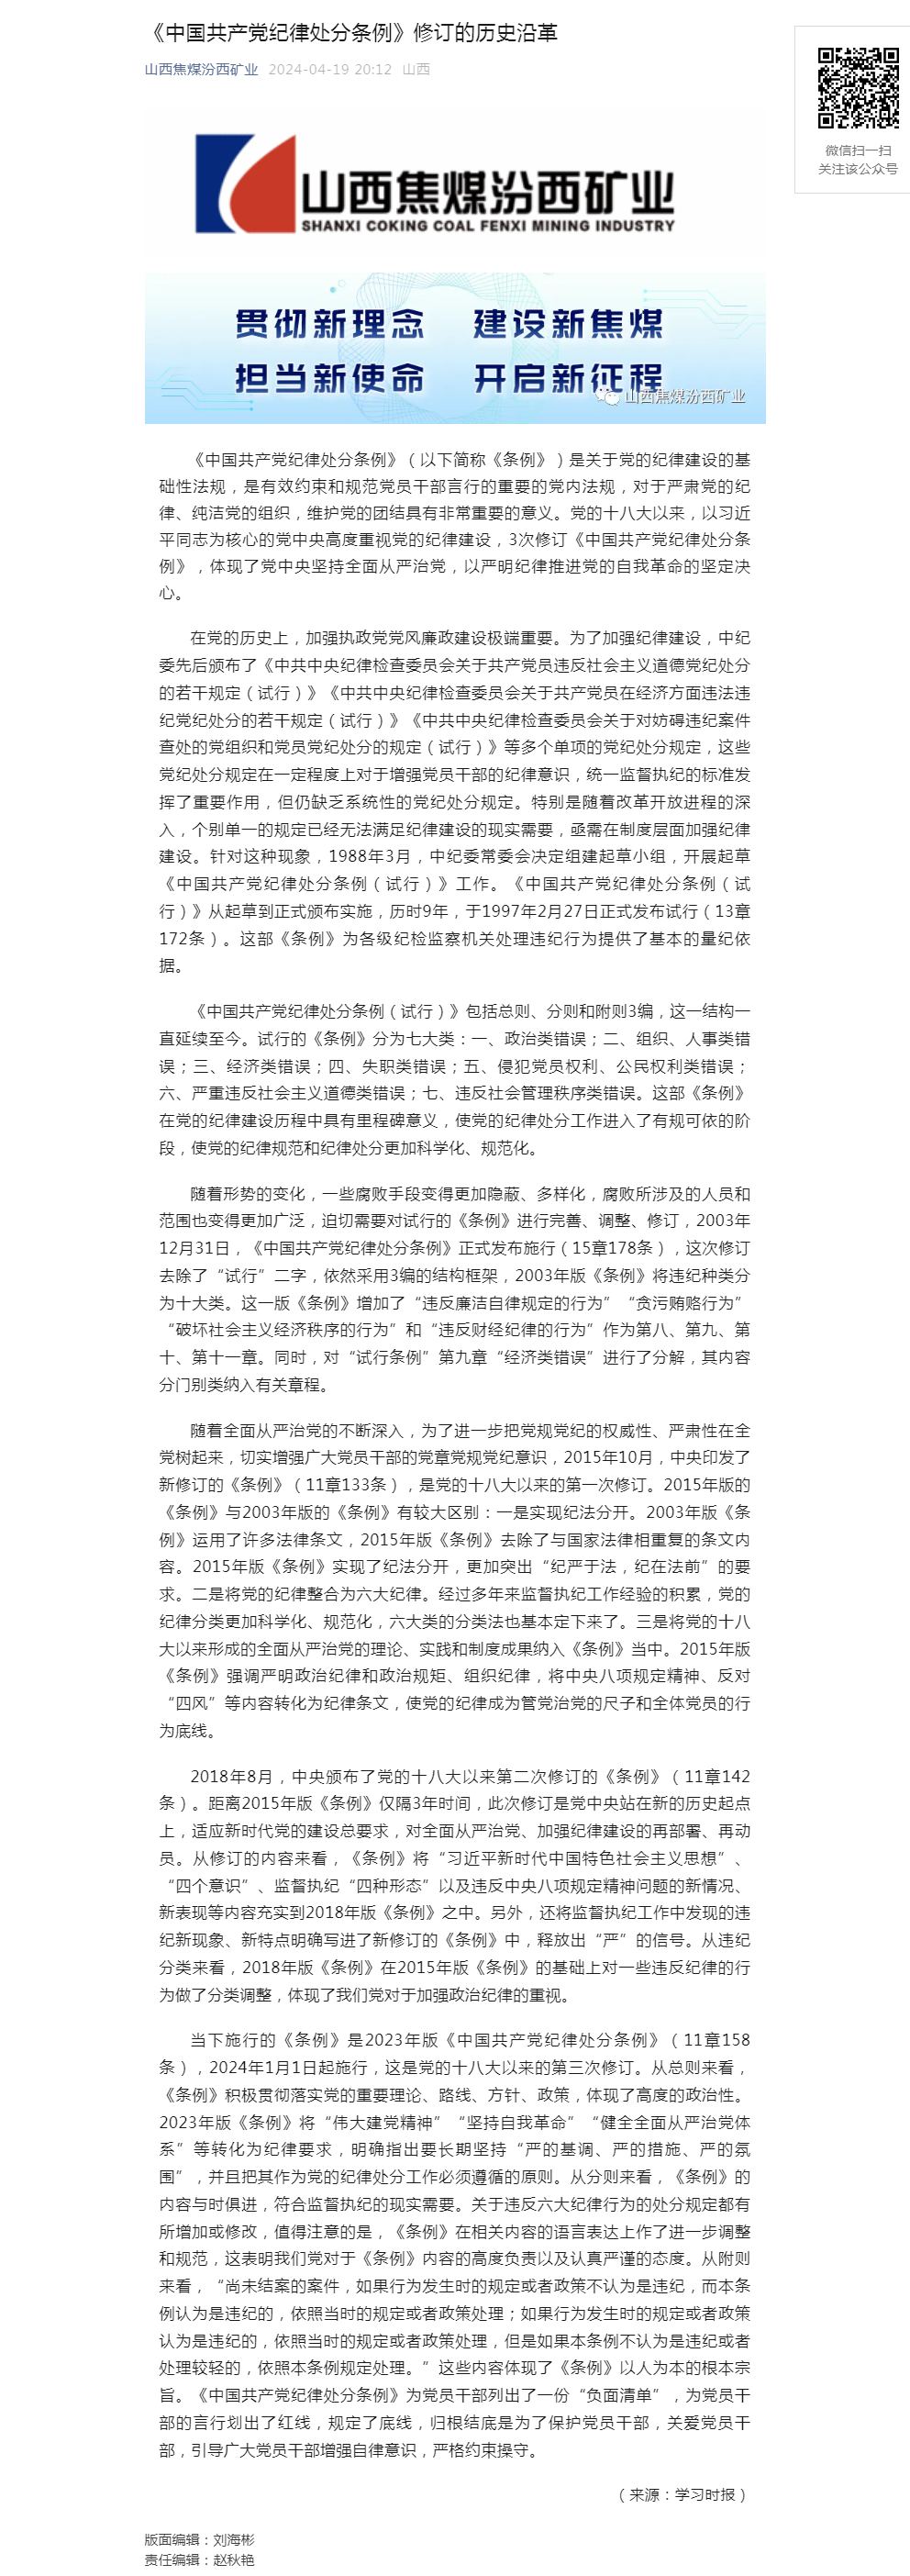 《中国共产党纪律处分条例》修订的历史沿革.png